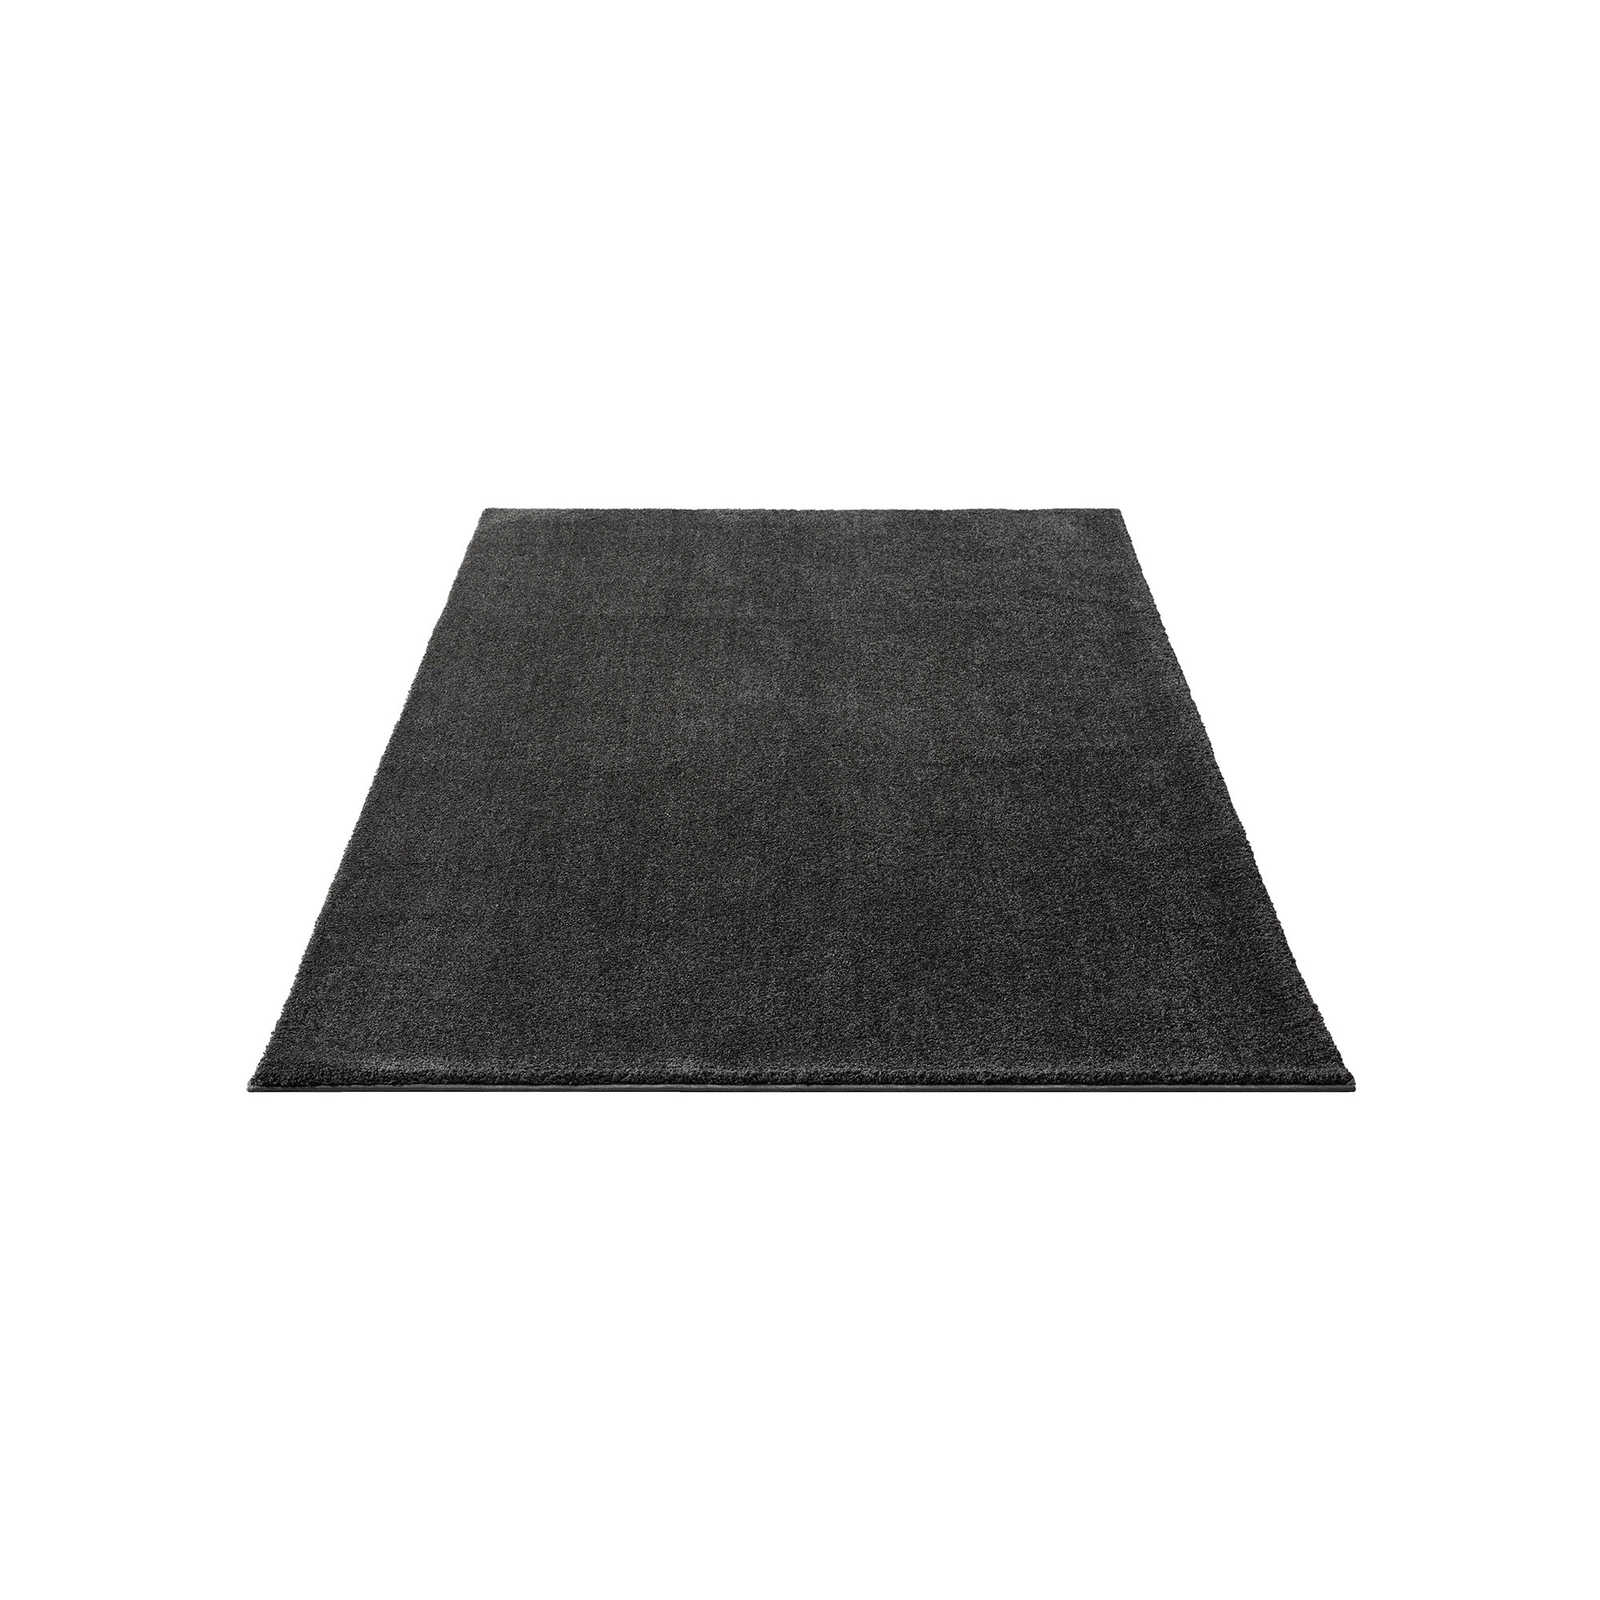 Zacht kortpolig tapijt in antraciet - 200 x 140 cm
